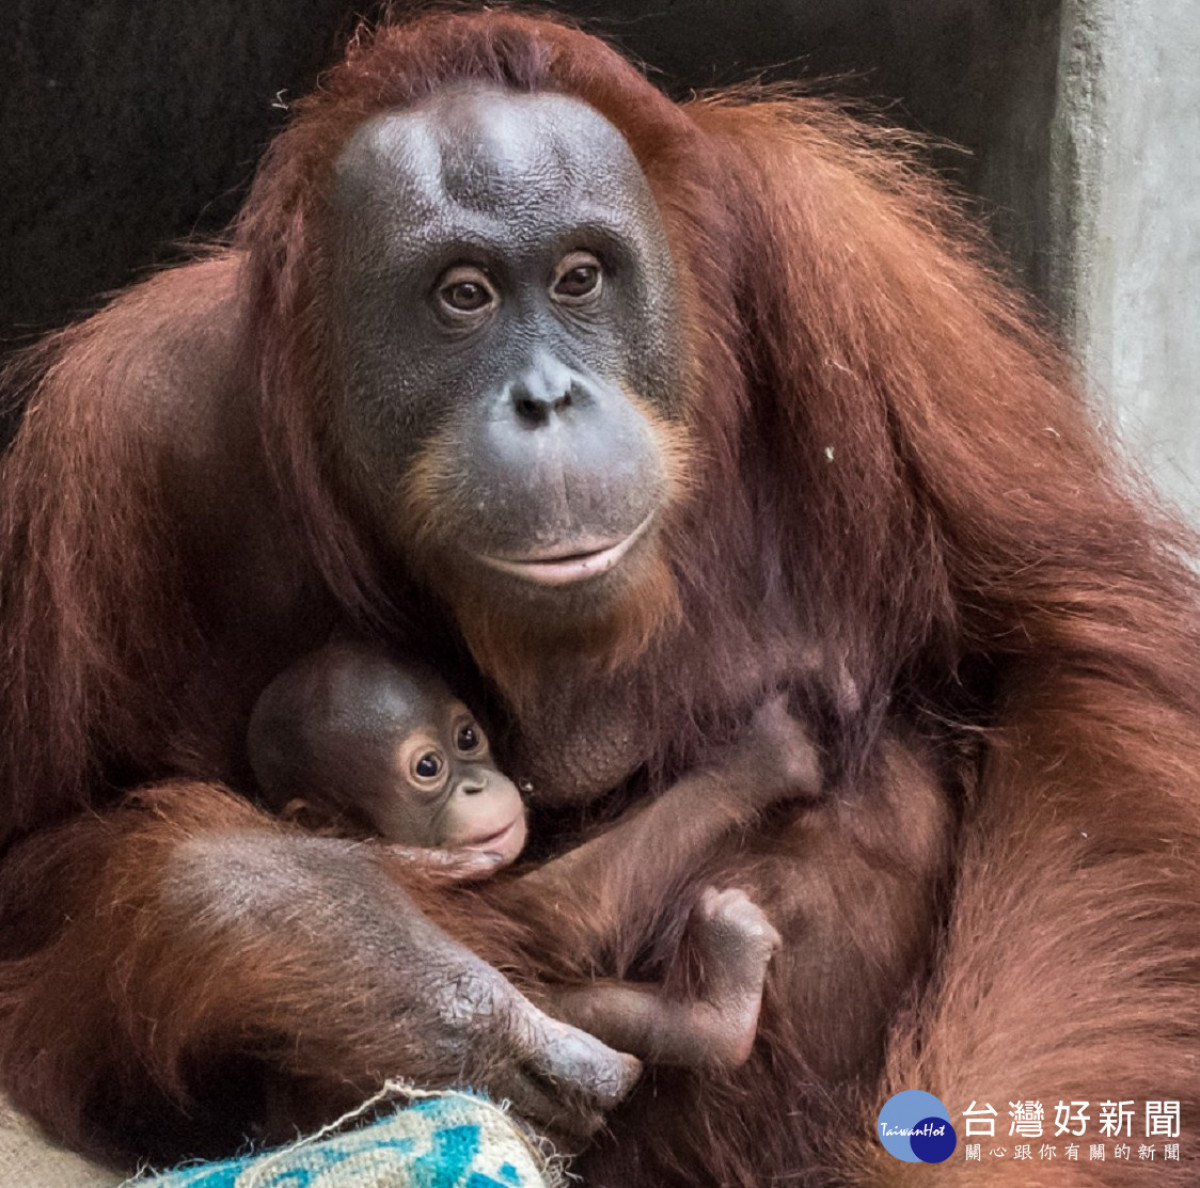 紅毛猩猩夫妻結褵近十年喜迎女寶寶 台灣好新聞taiwanhot